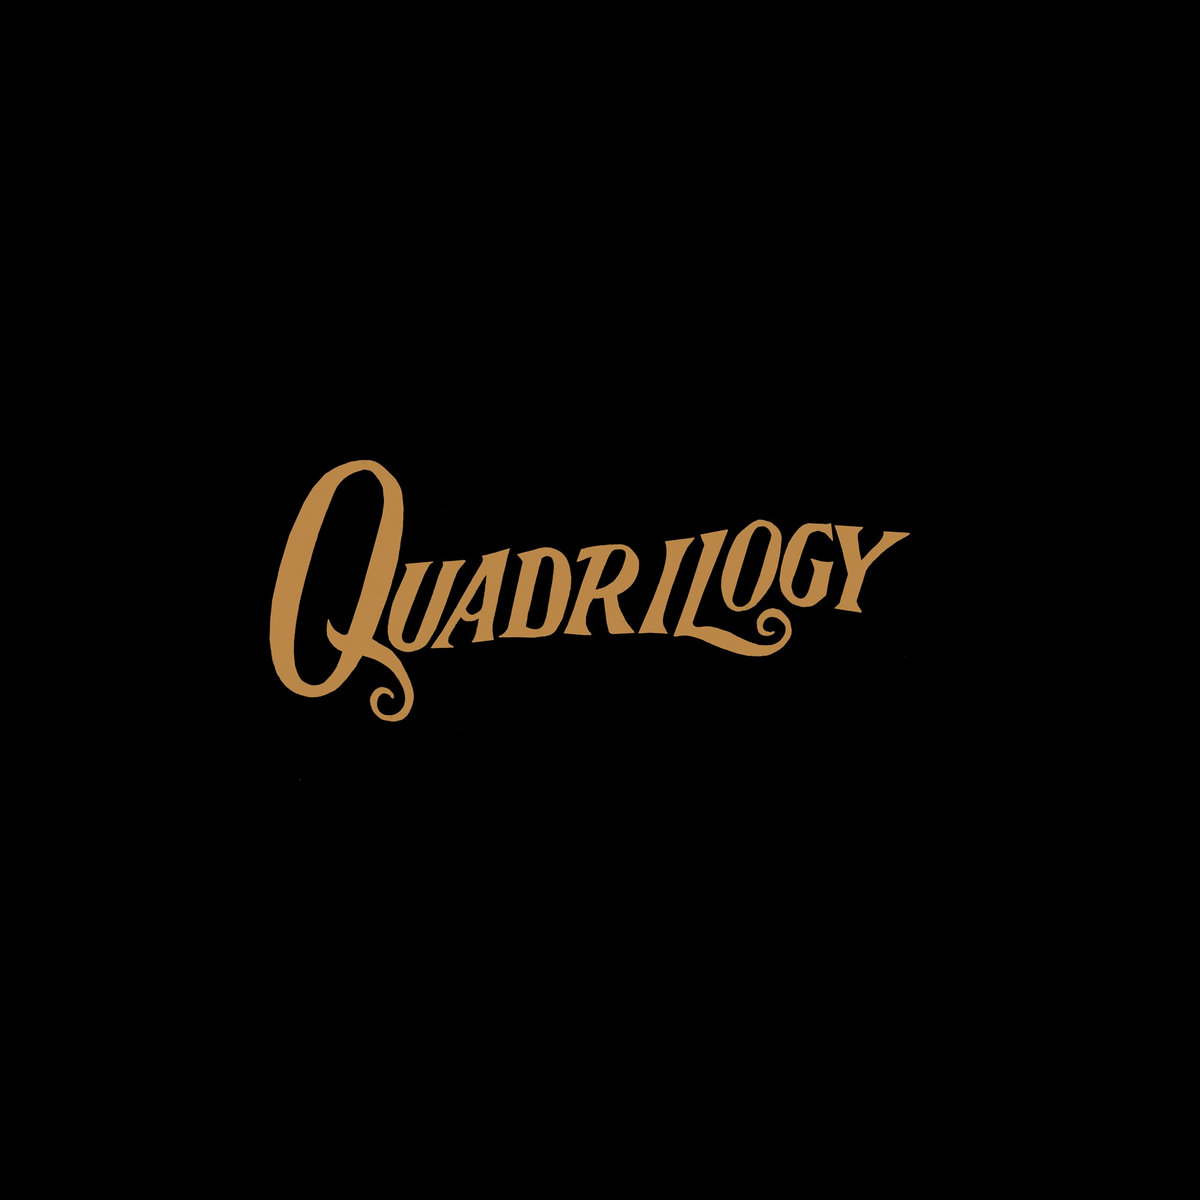 Kristofer-Astrom---Quadrilogy